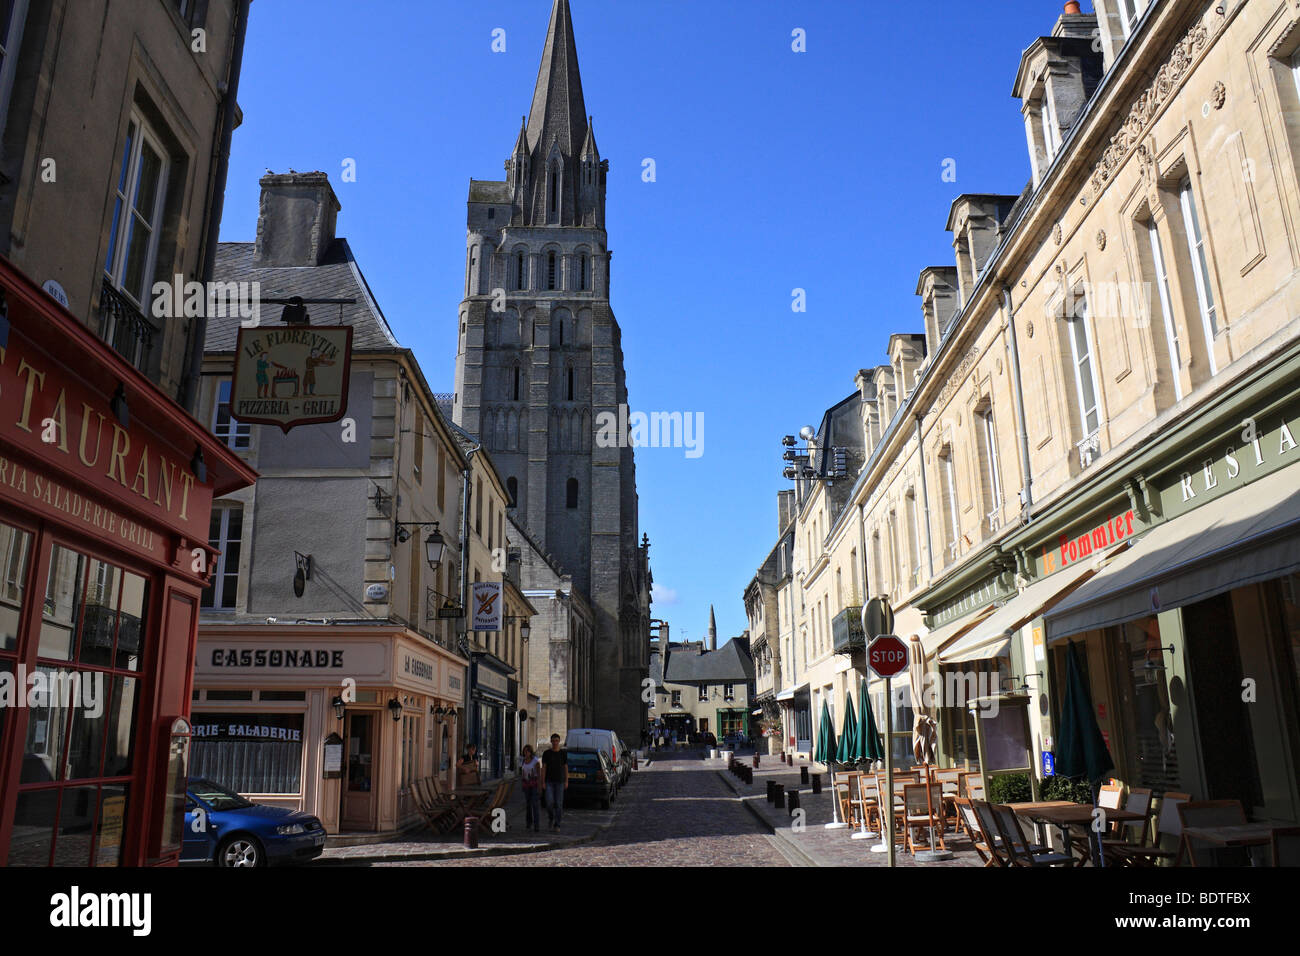 La cathédrale de Bayeux, Cathédrale Notre-Dame de Bayeux, Normandie, France. Page d'accueil d'origine de la Tapisserie de Bayeux Banque D'Images